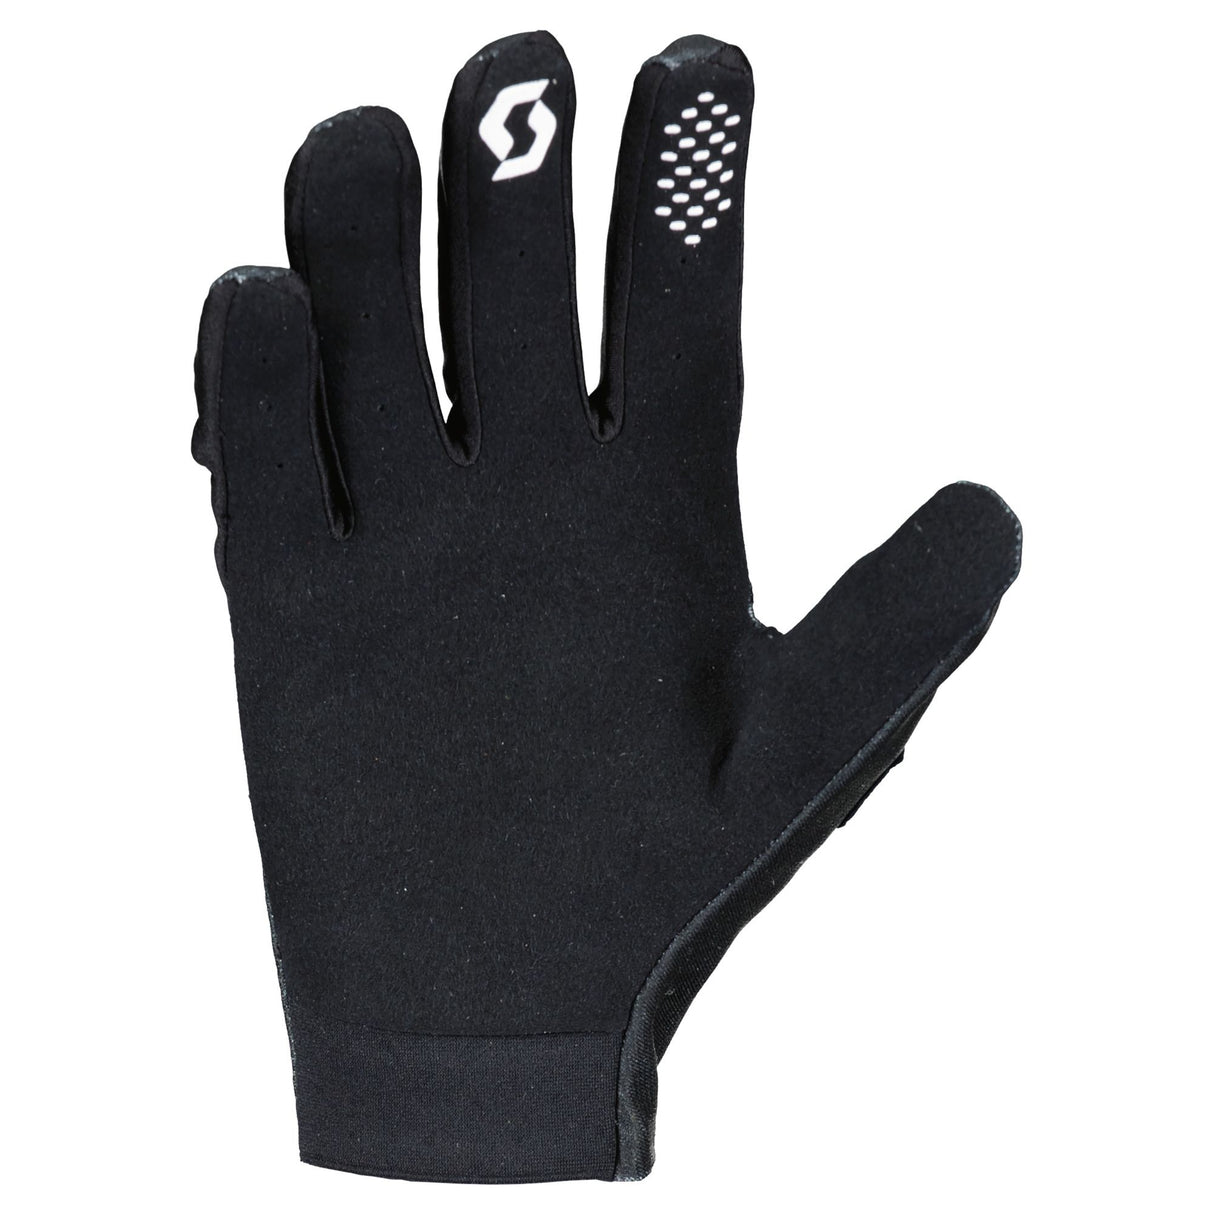 Scott 250 Swap Evo Glove Black/White